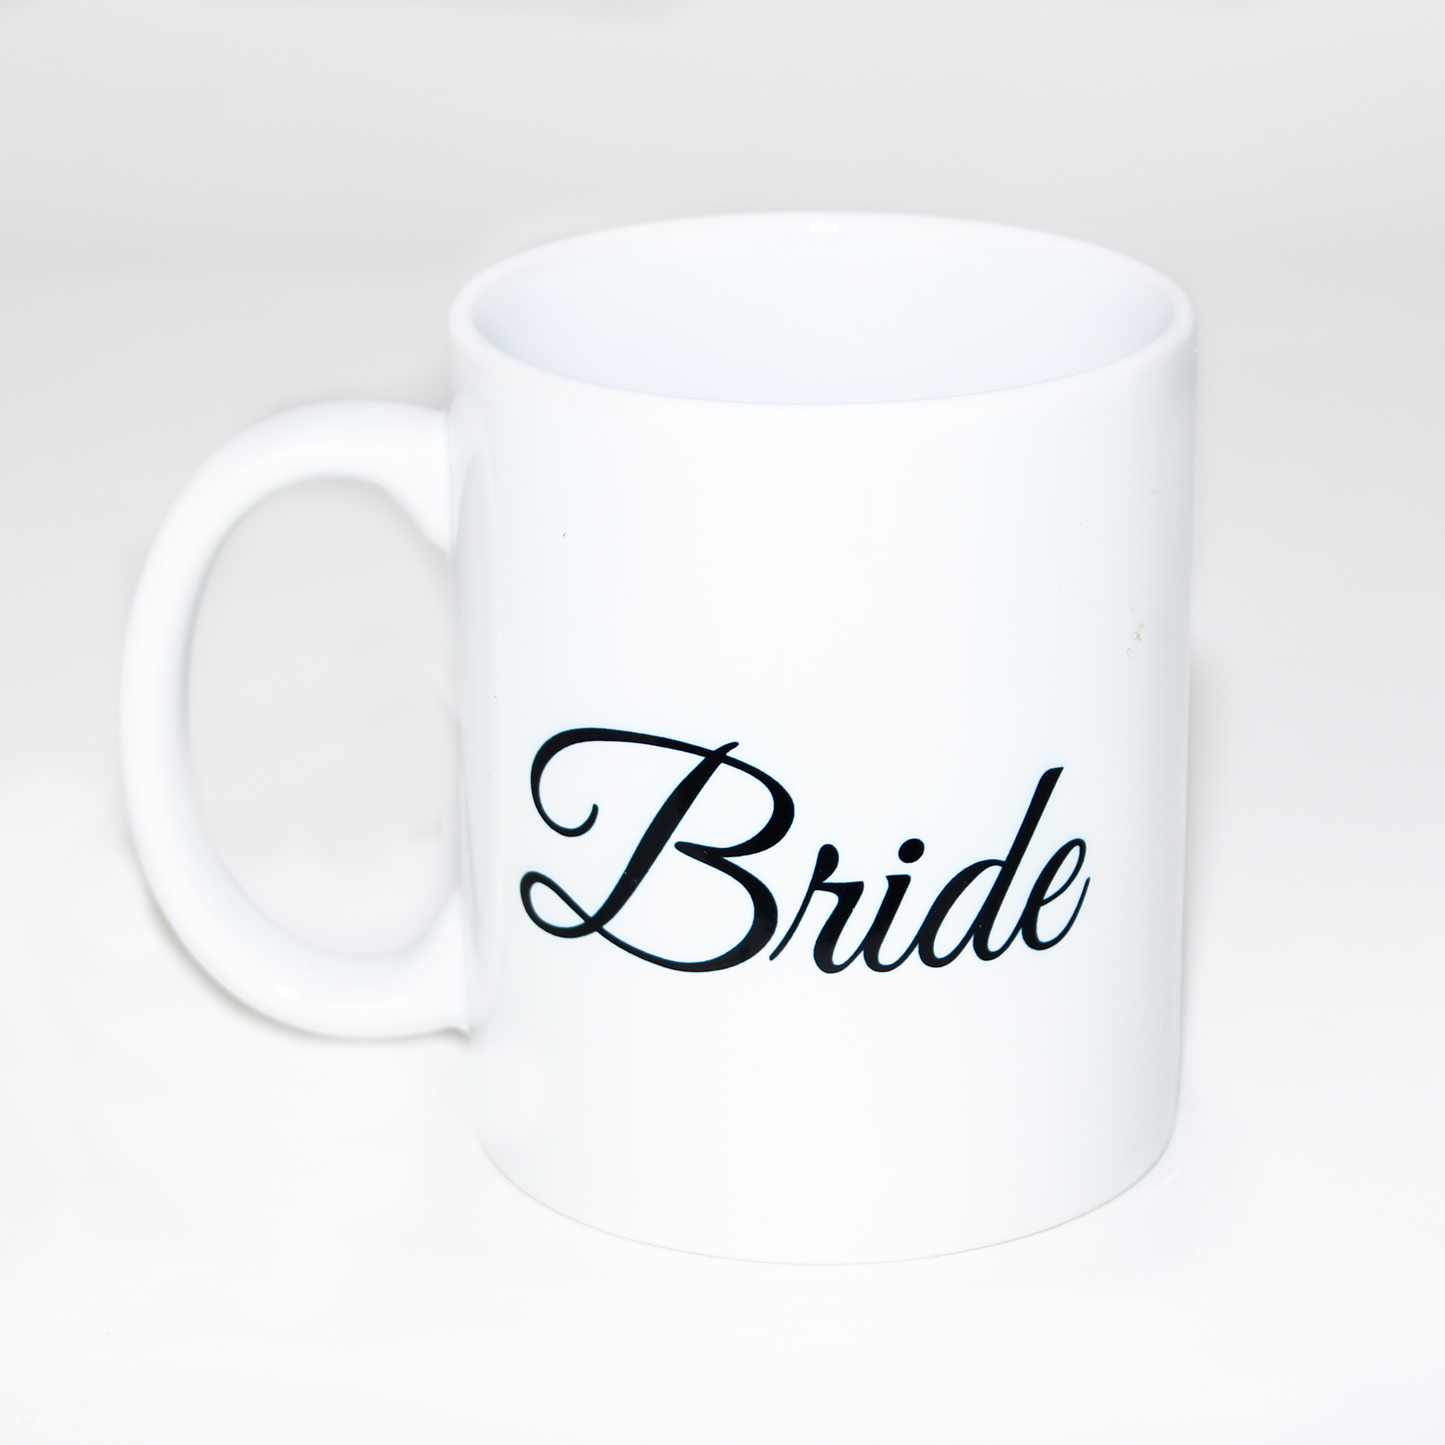 Taza en color blanco con texto "Bride" en color negro